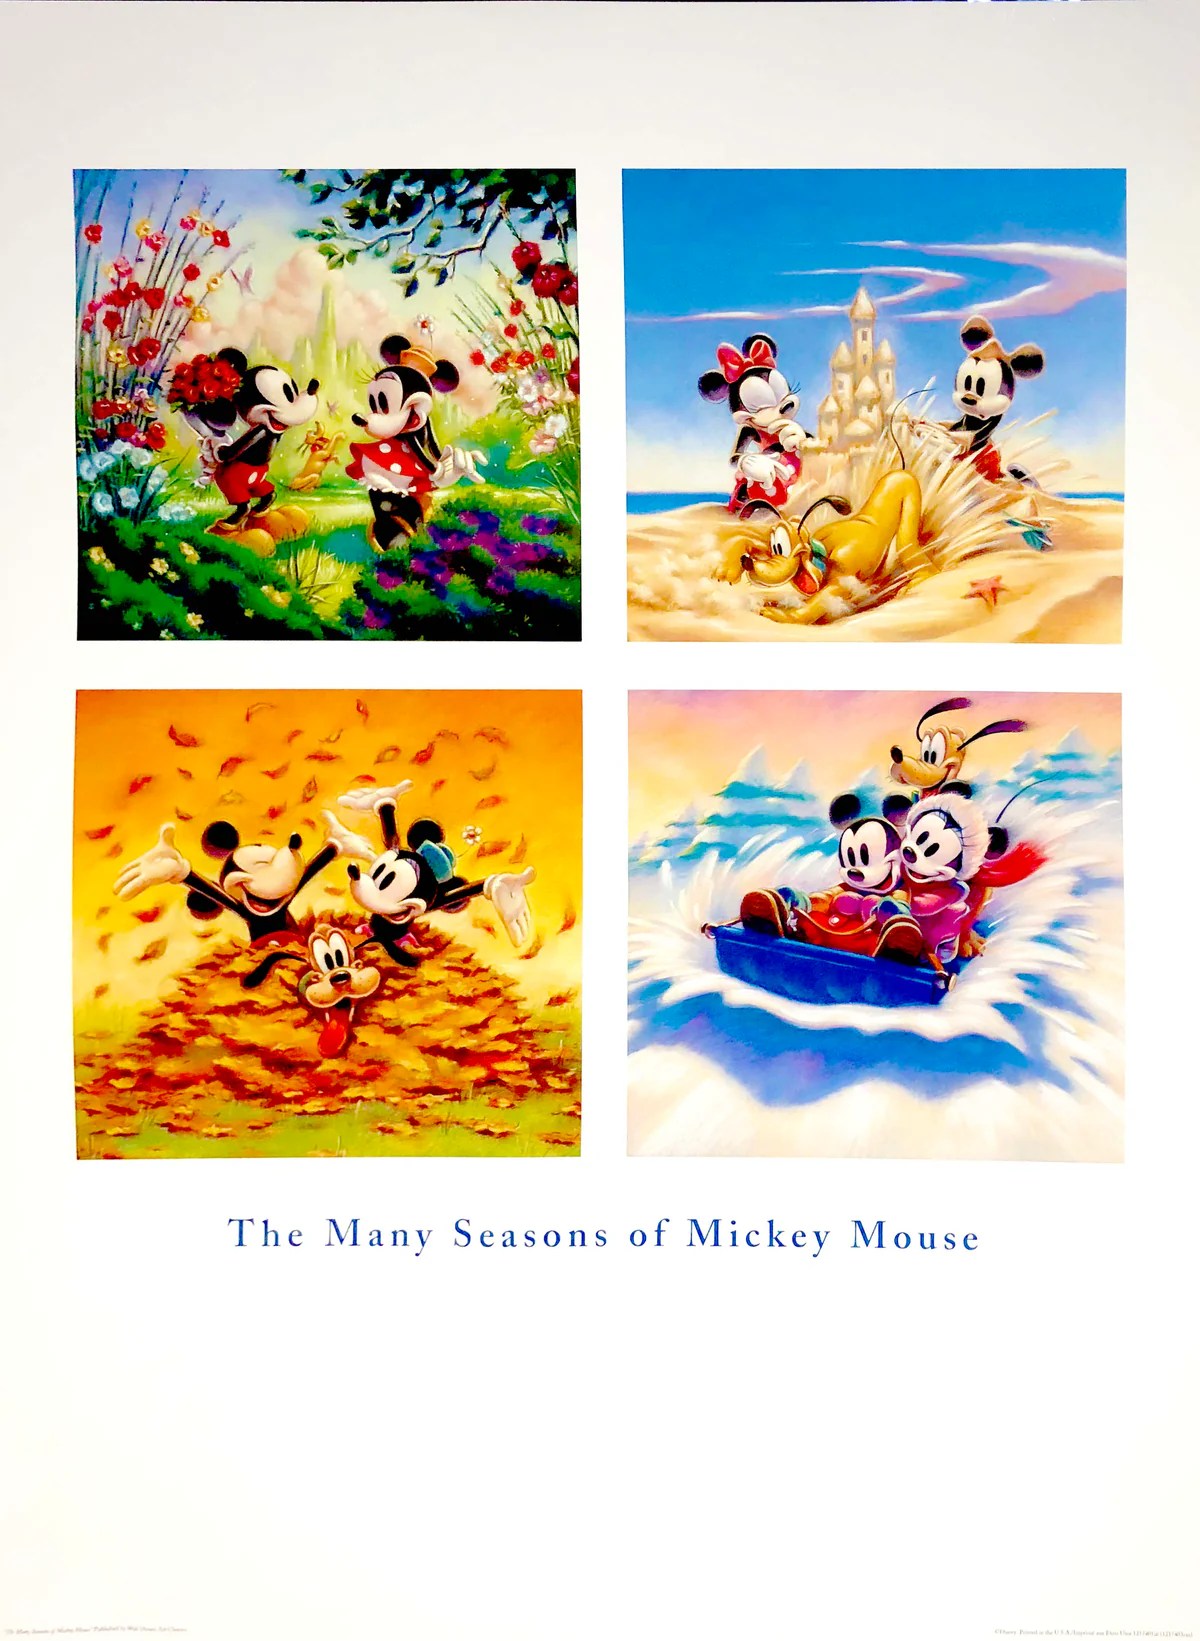 Disney "The Many Seasons of Mickey Mouse"